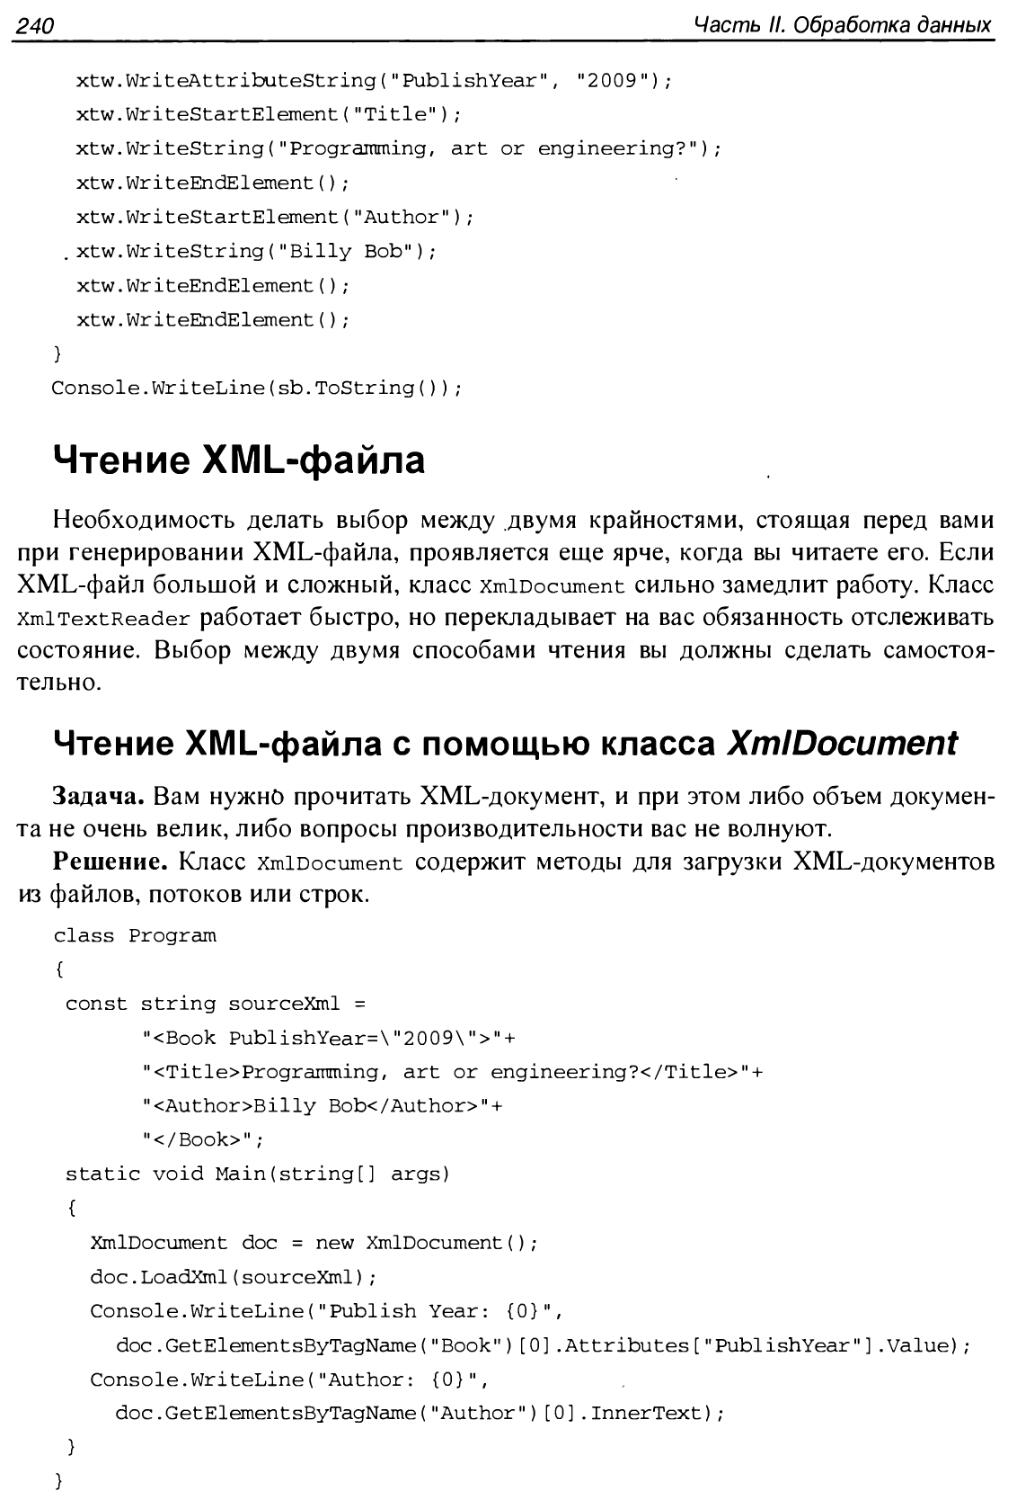 Чтение XML-файла